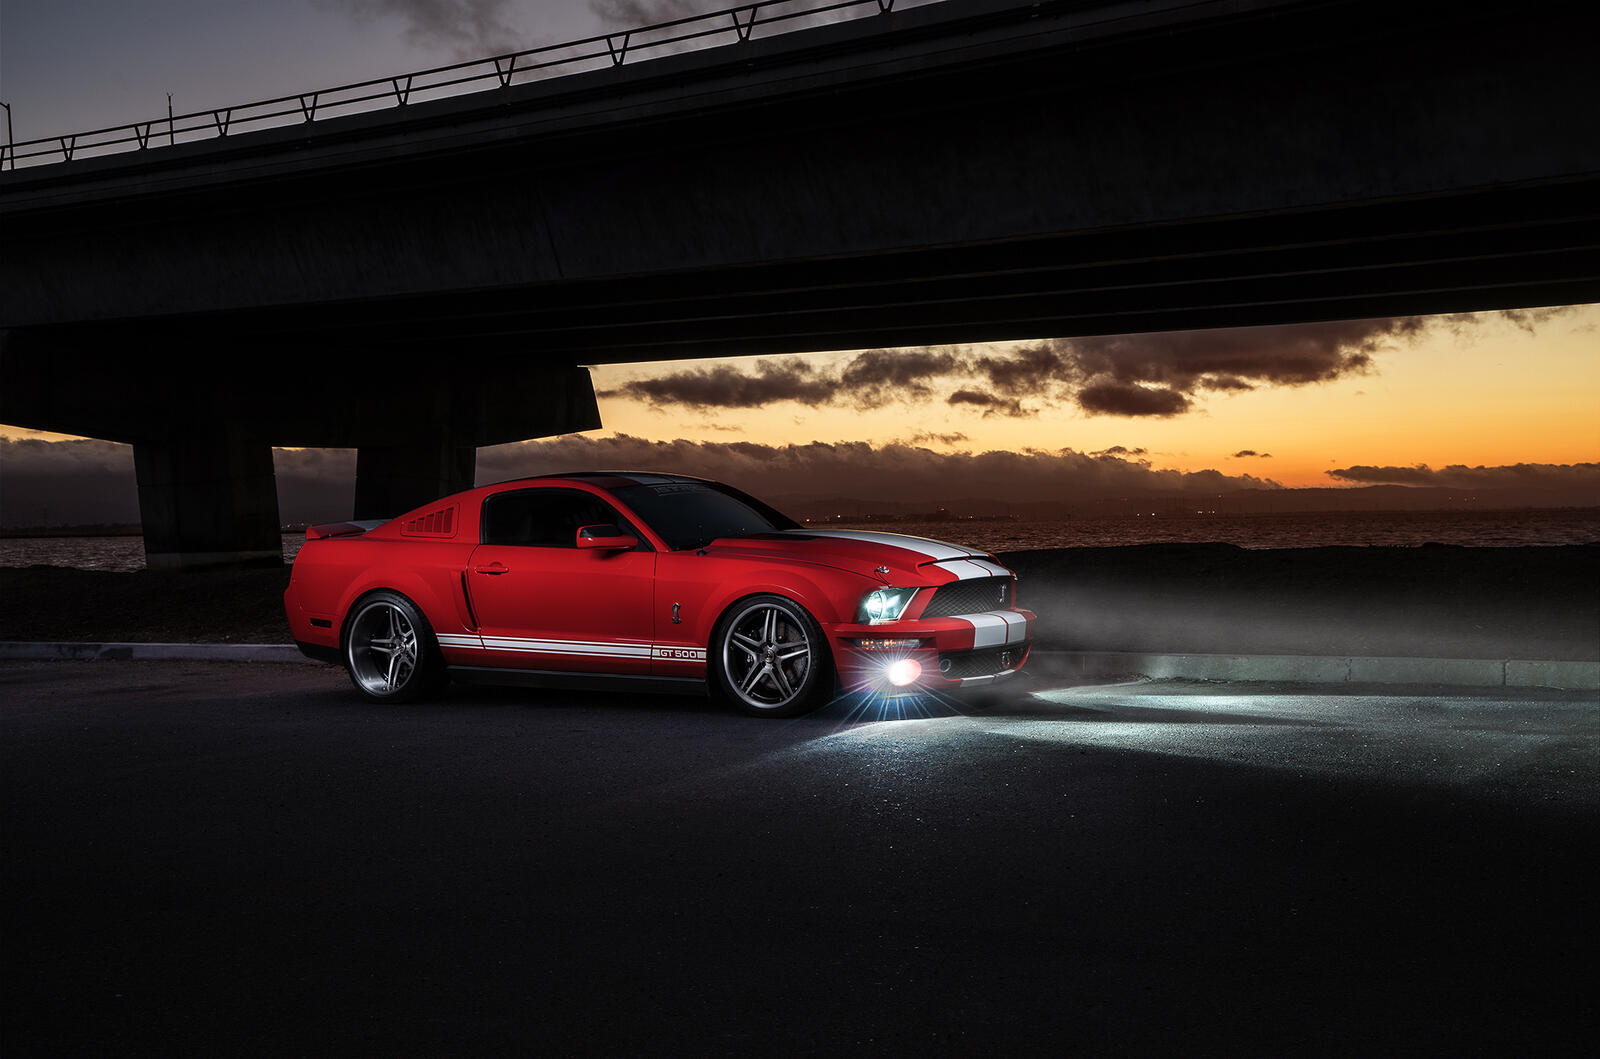 Бесплатное фото Ford Mustang красного цвета в вечернее время